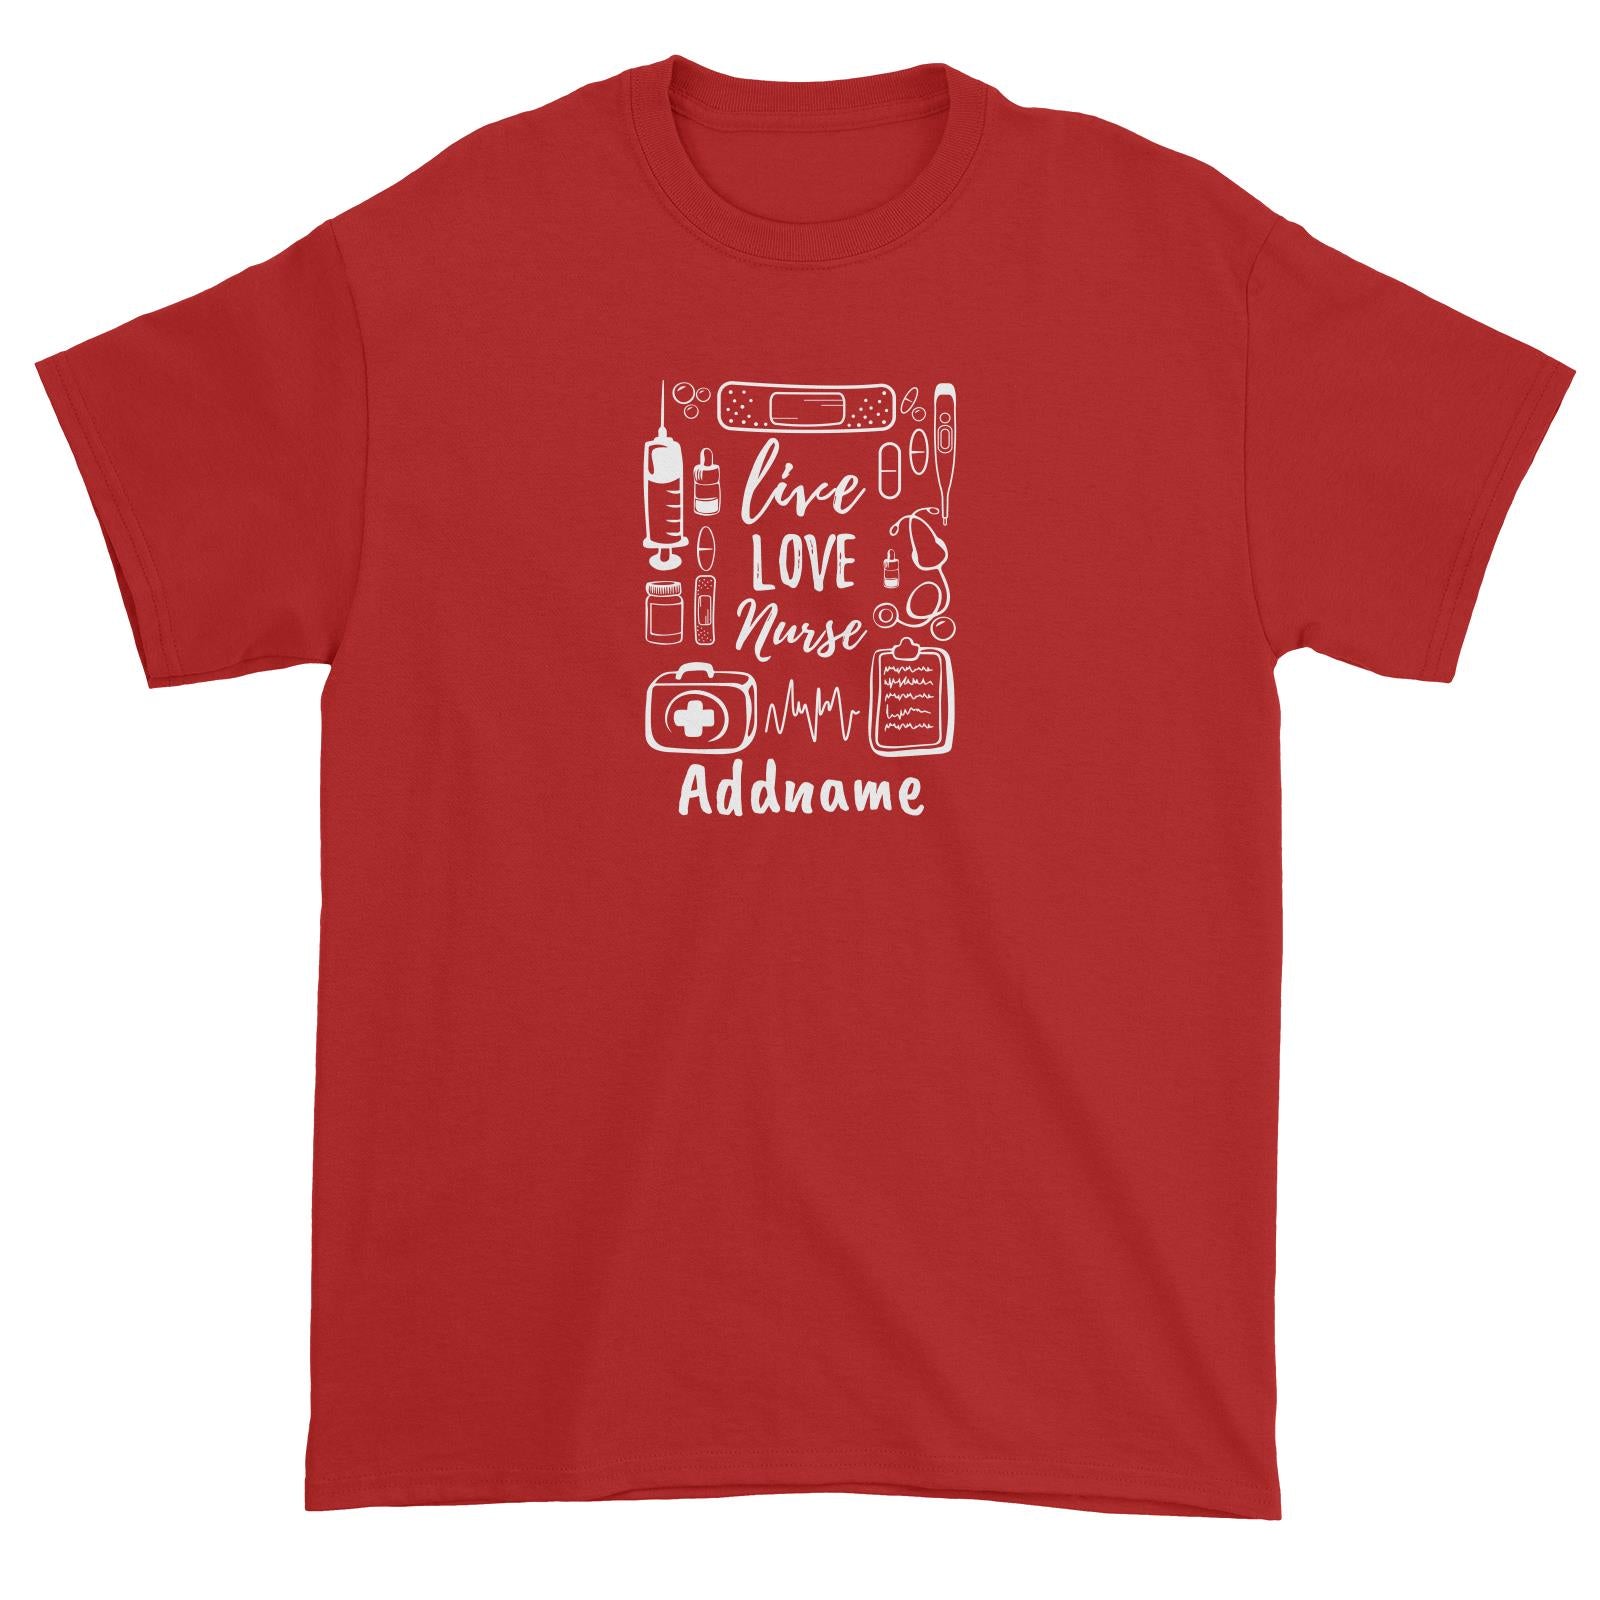 Live, Love, Nurse Unisex T-Shirt